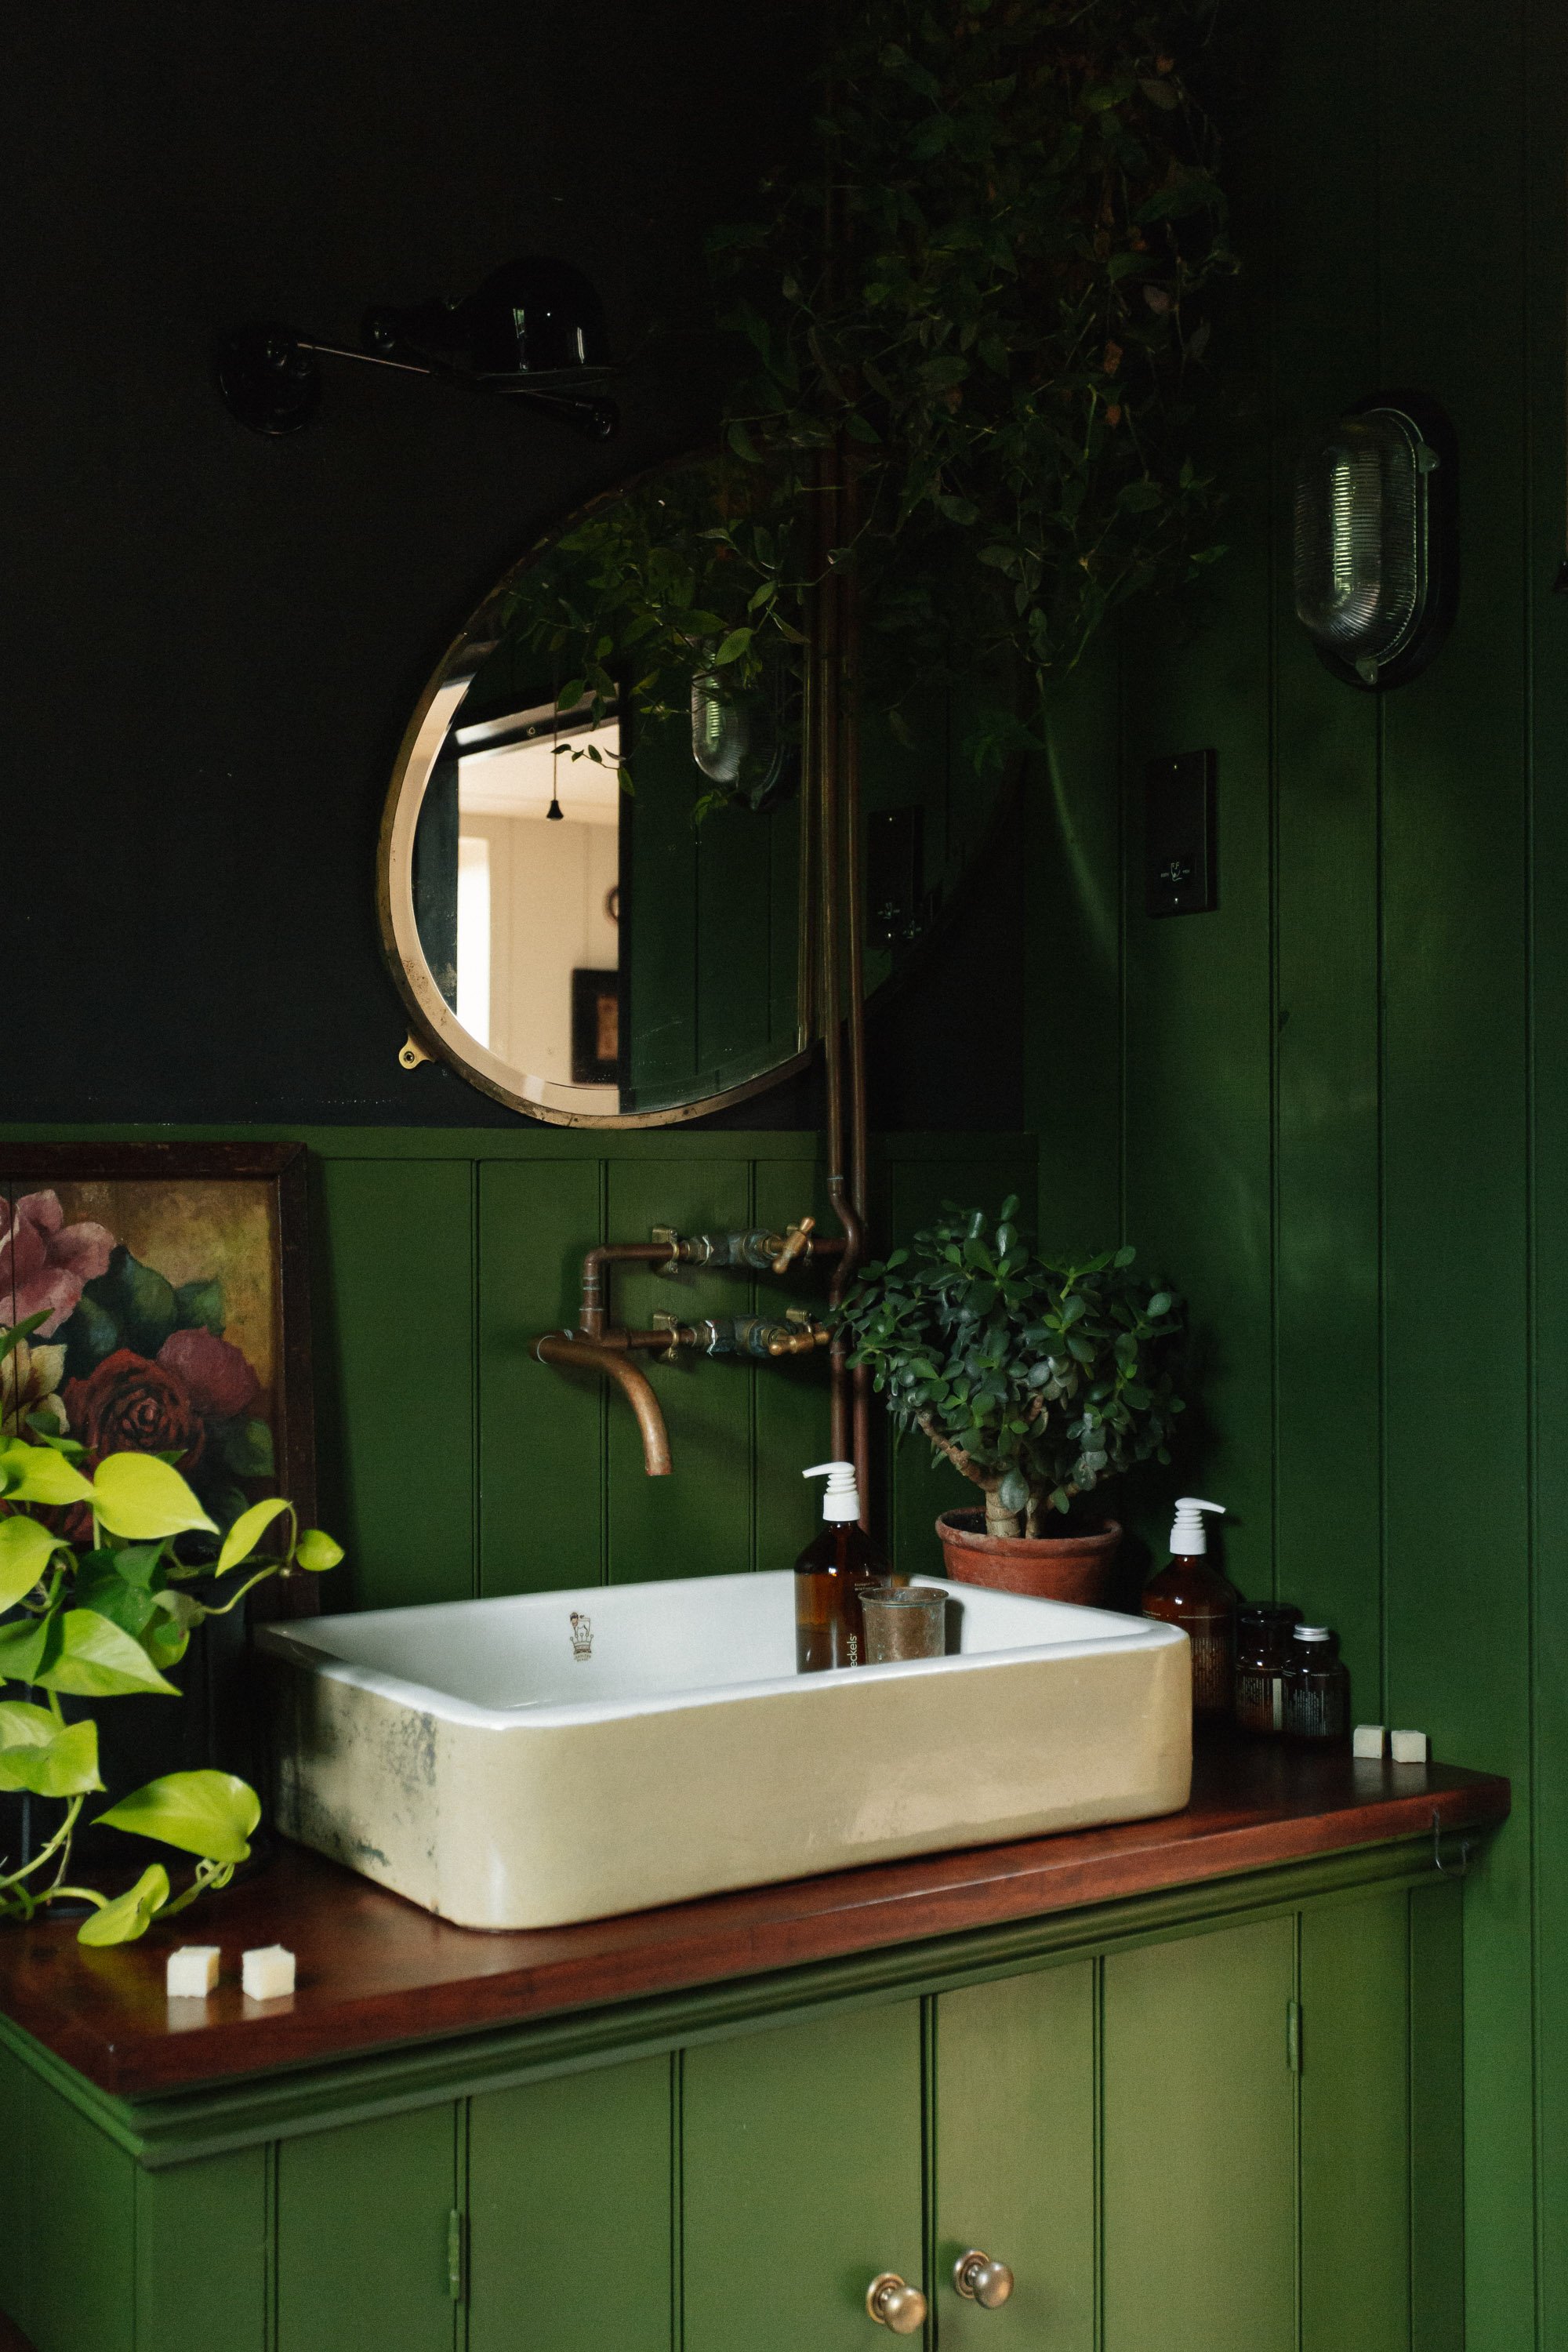 Bathroom sink area with dark green wood clad walls